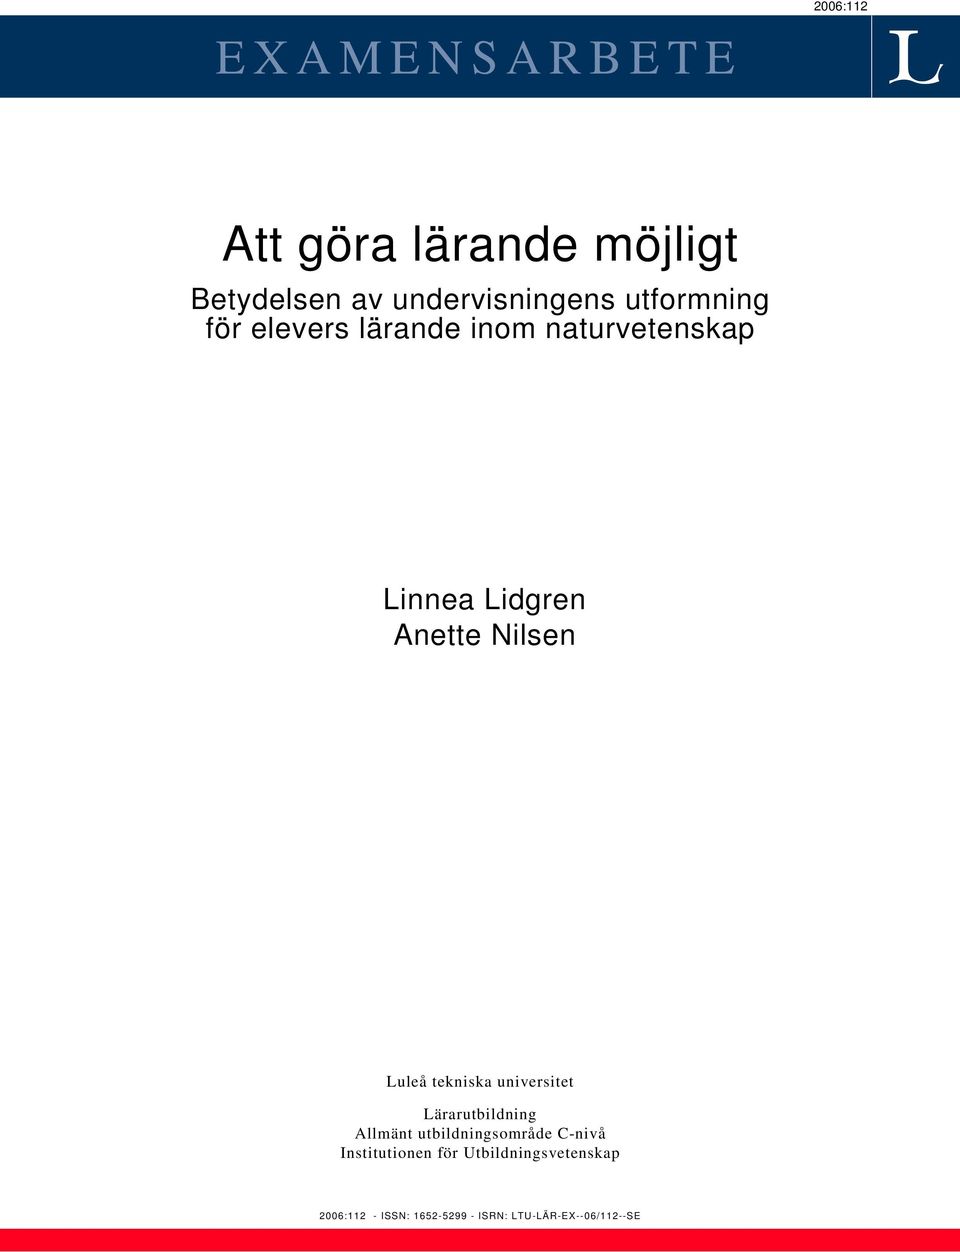 Luleå tekniska universitet Lärarutbildning Allmänt utbildningsområde C-nivå